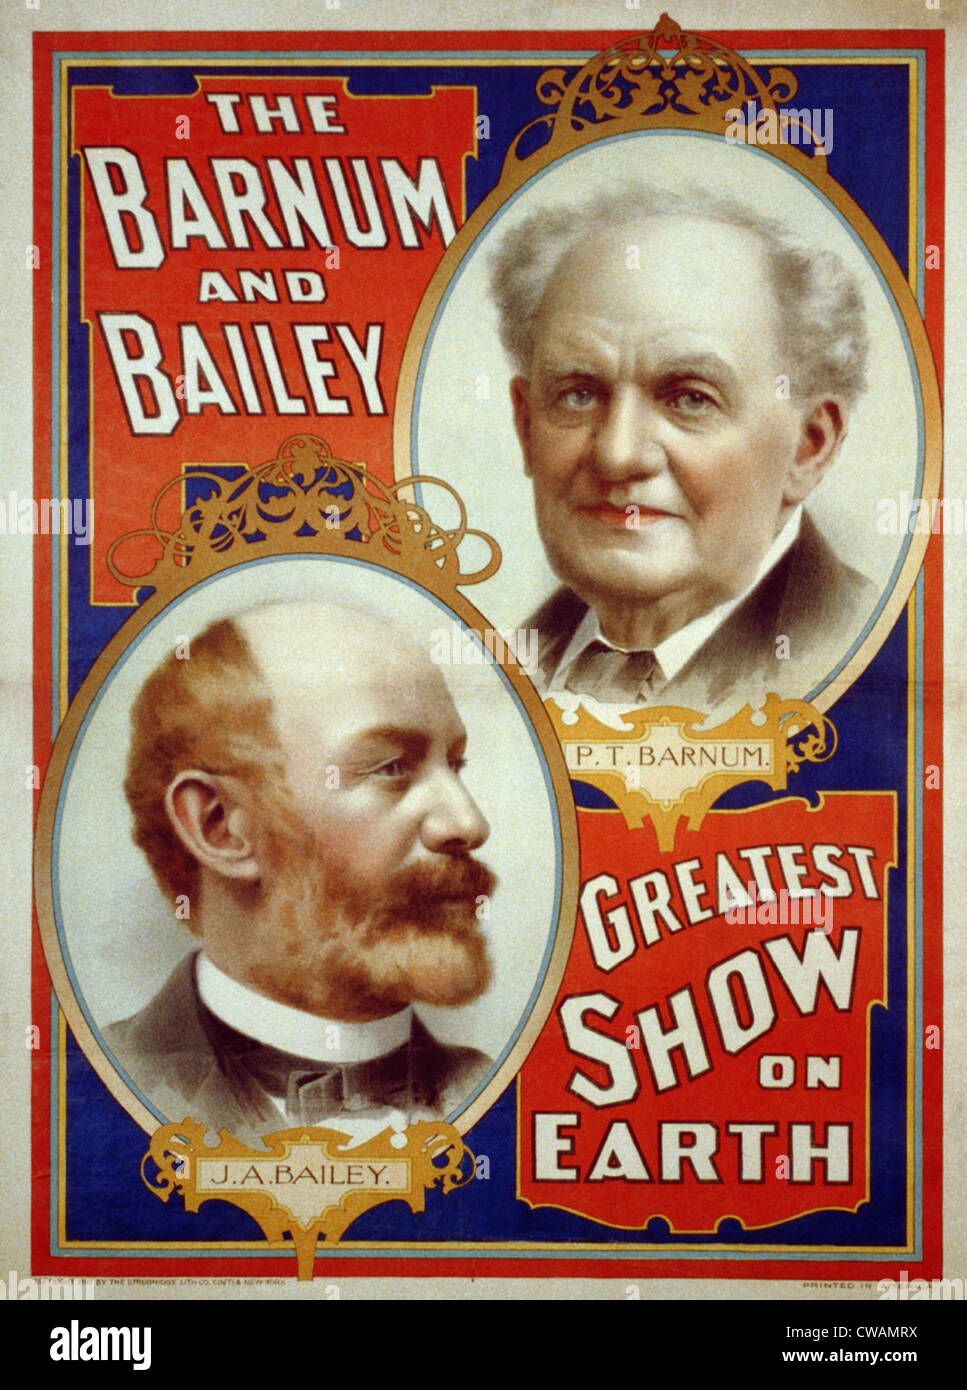 Cartel de Barnum & Bailey mayor espectáculo de la tierra con el retrato de P.T. Barnum y J.A. Bailey Foto de stock